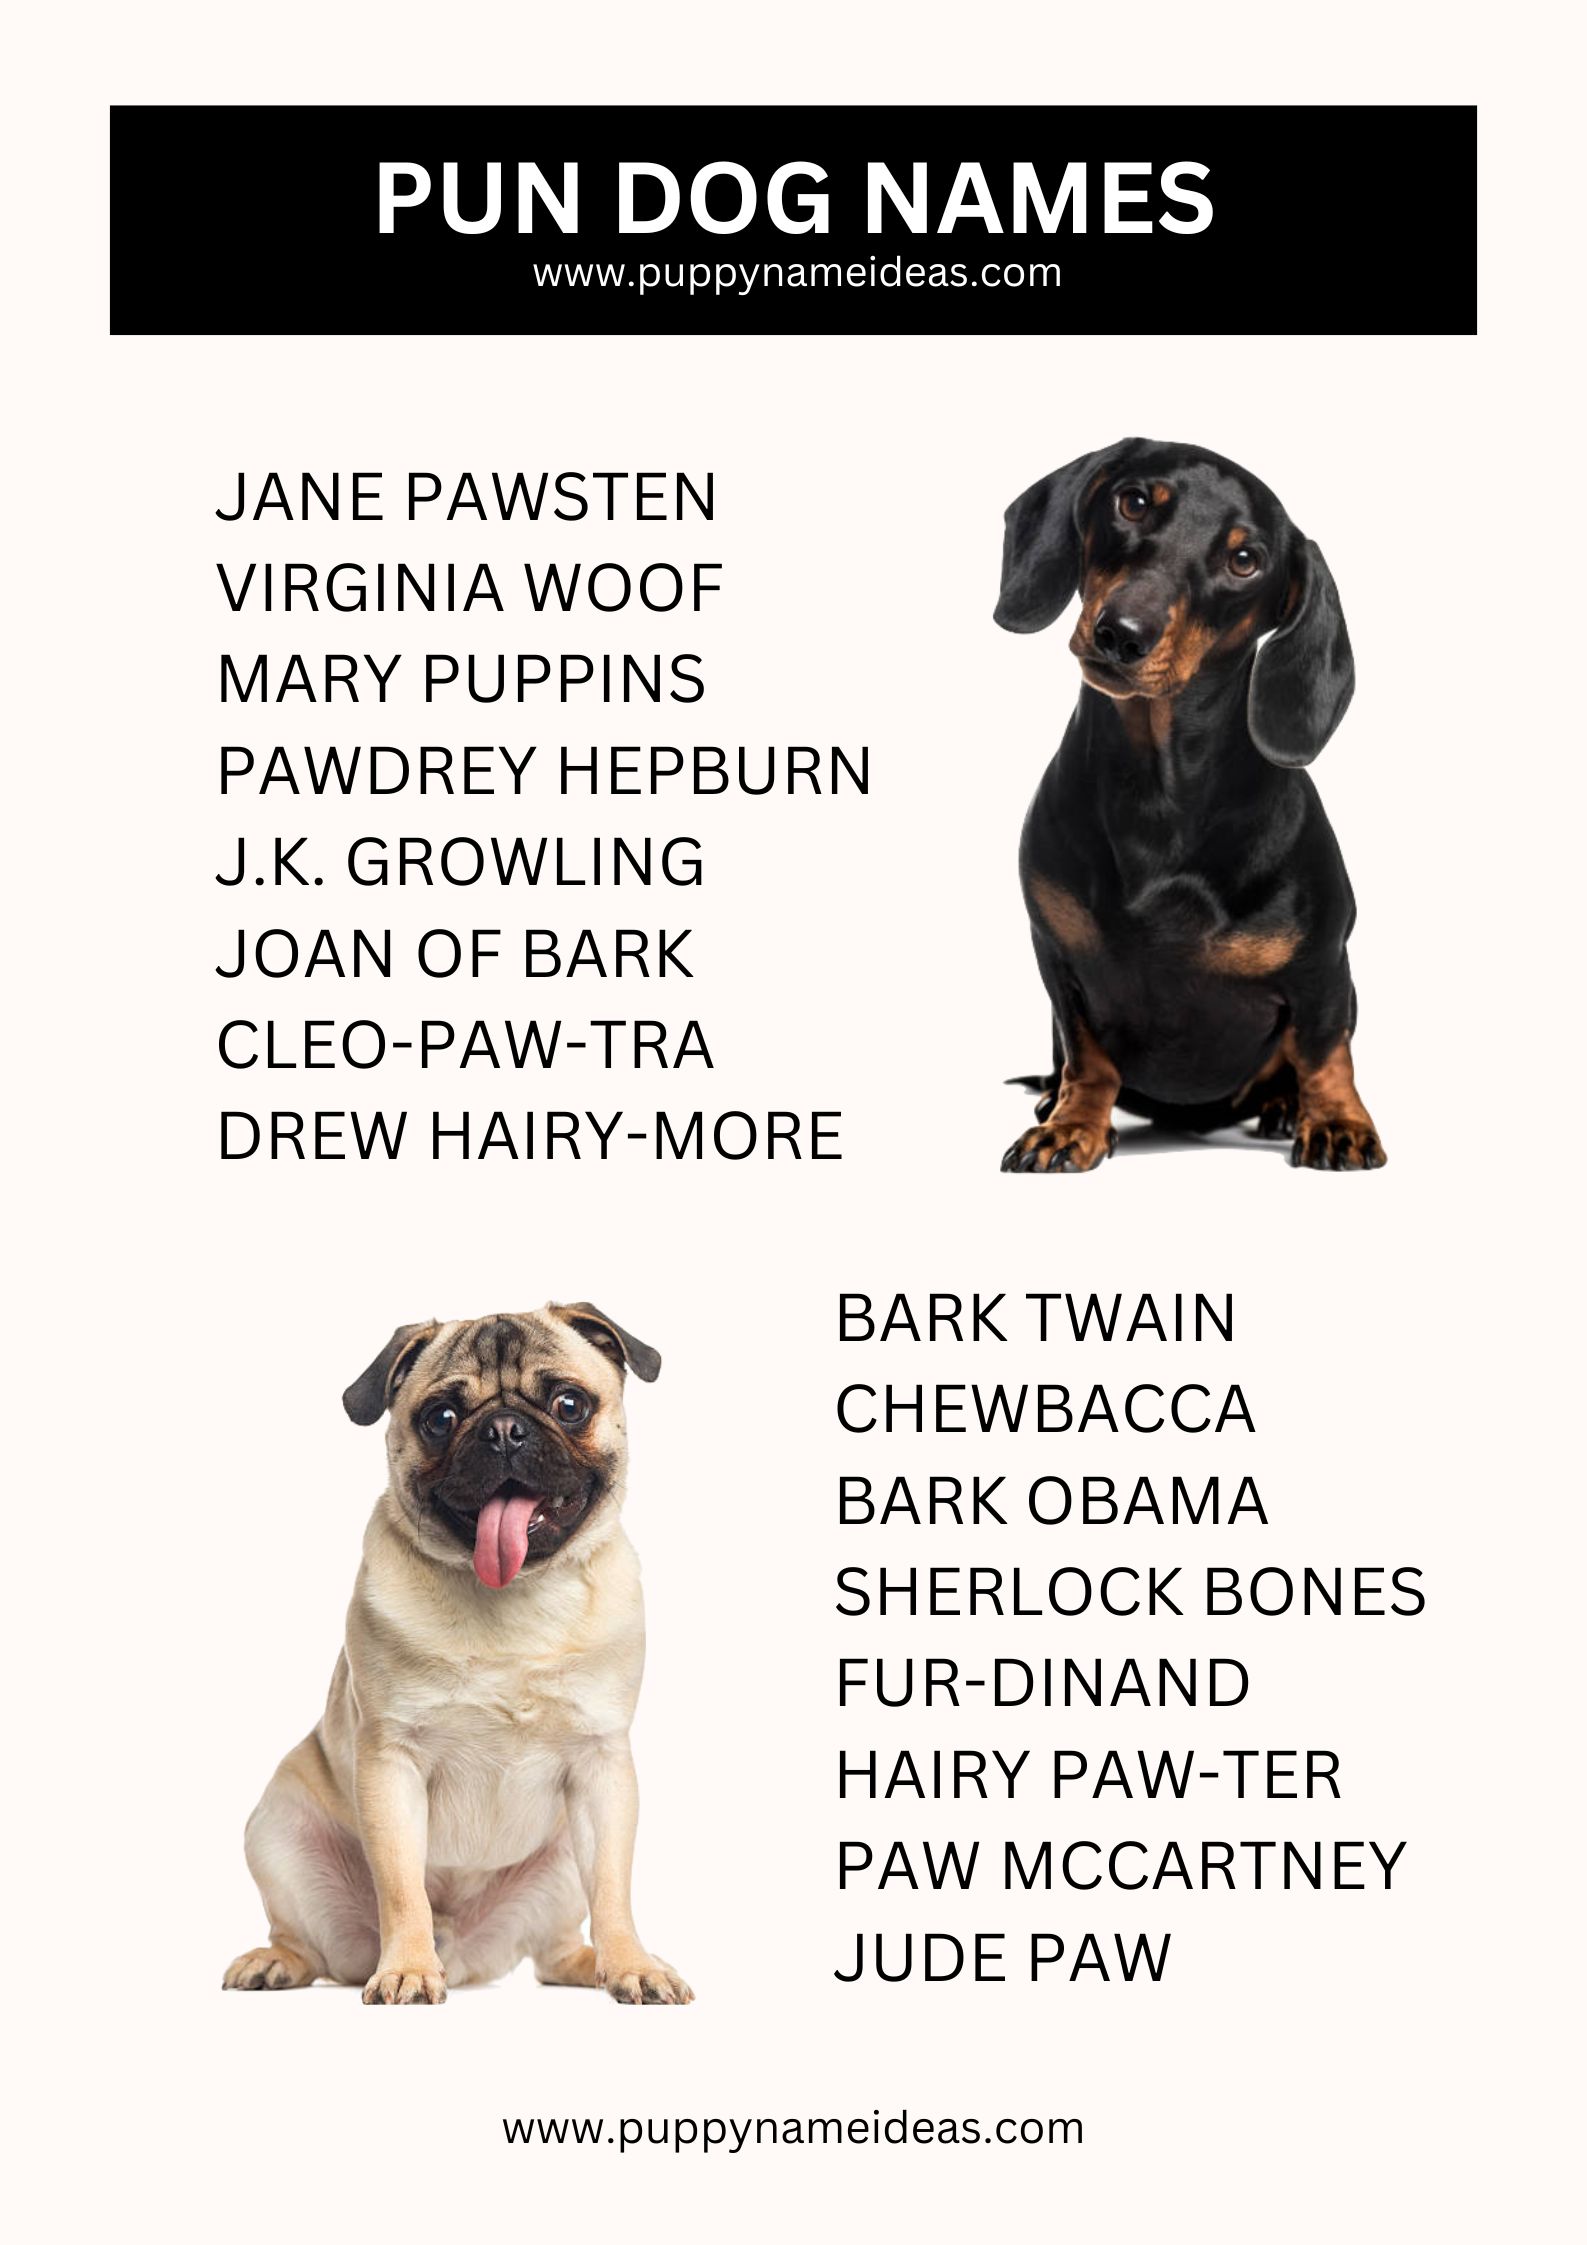 List Of Pun Dog Names